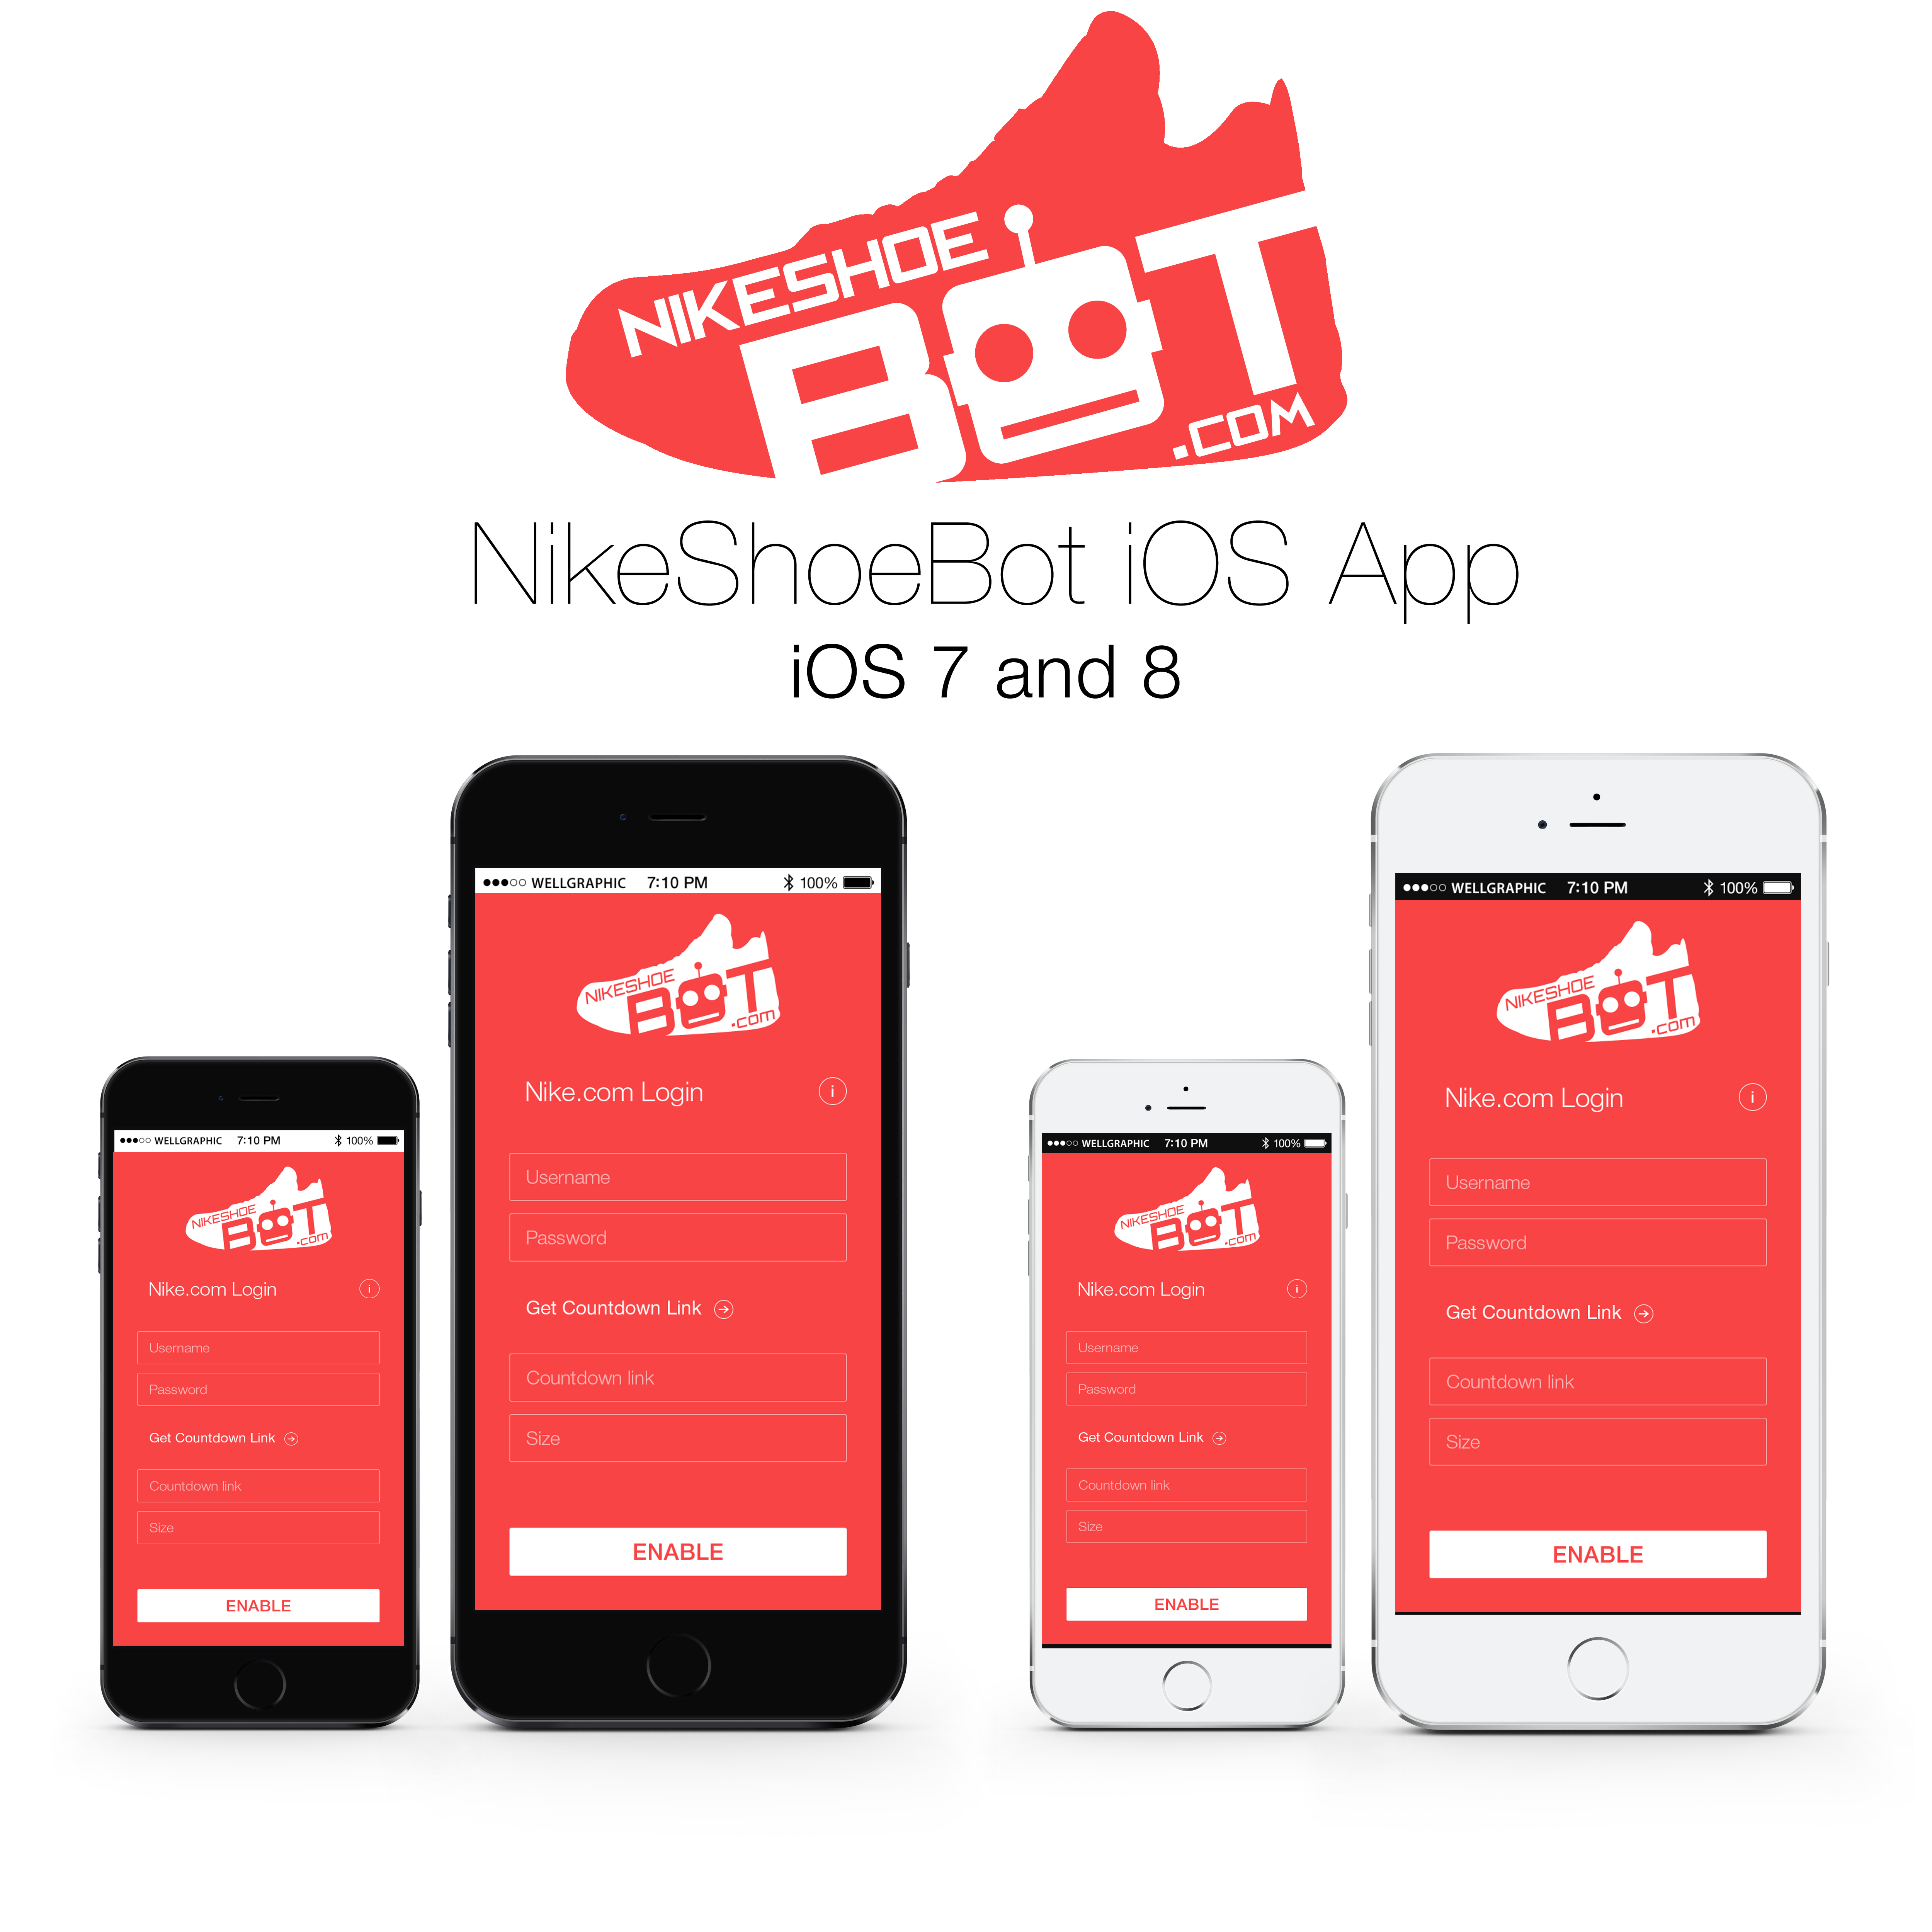 NikeShoeBot iOS App NikeShoeBot